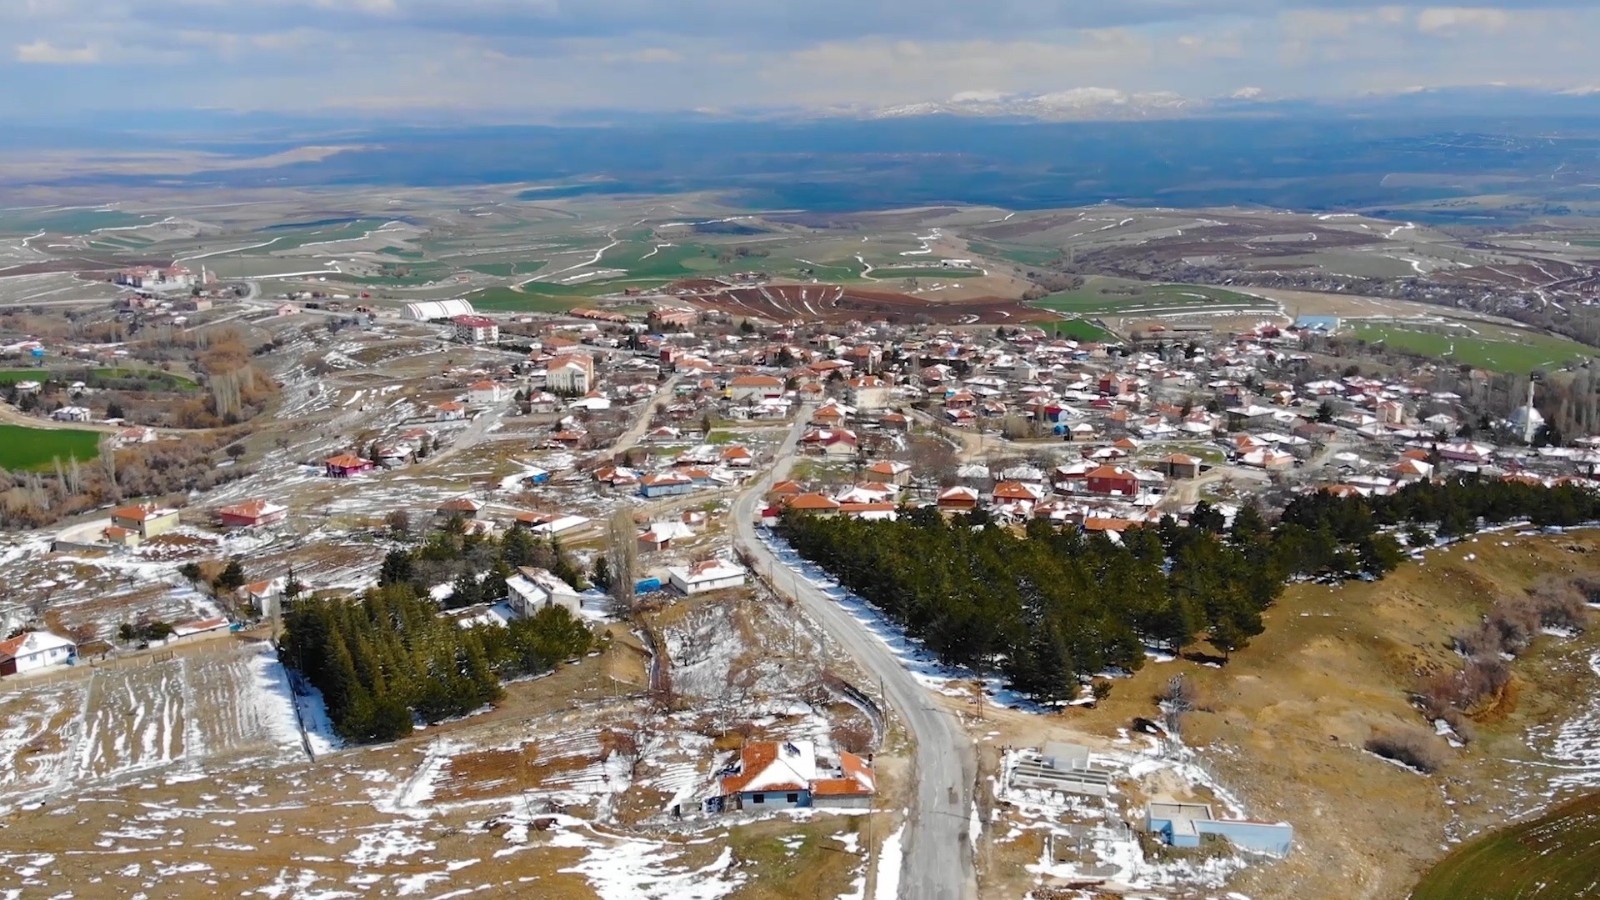 Türkiye'nin en küçük ilçesi Çelebi'ye büyük yatırım: Hedef, ilçe nüfusunu artırmak - Kırıkkale Haberleri